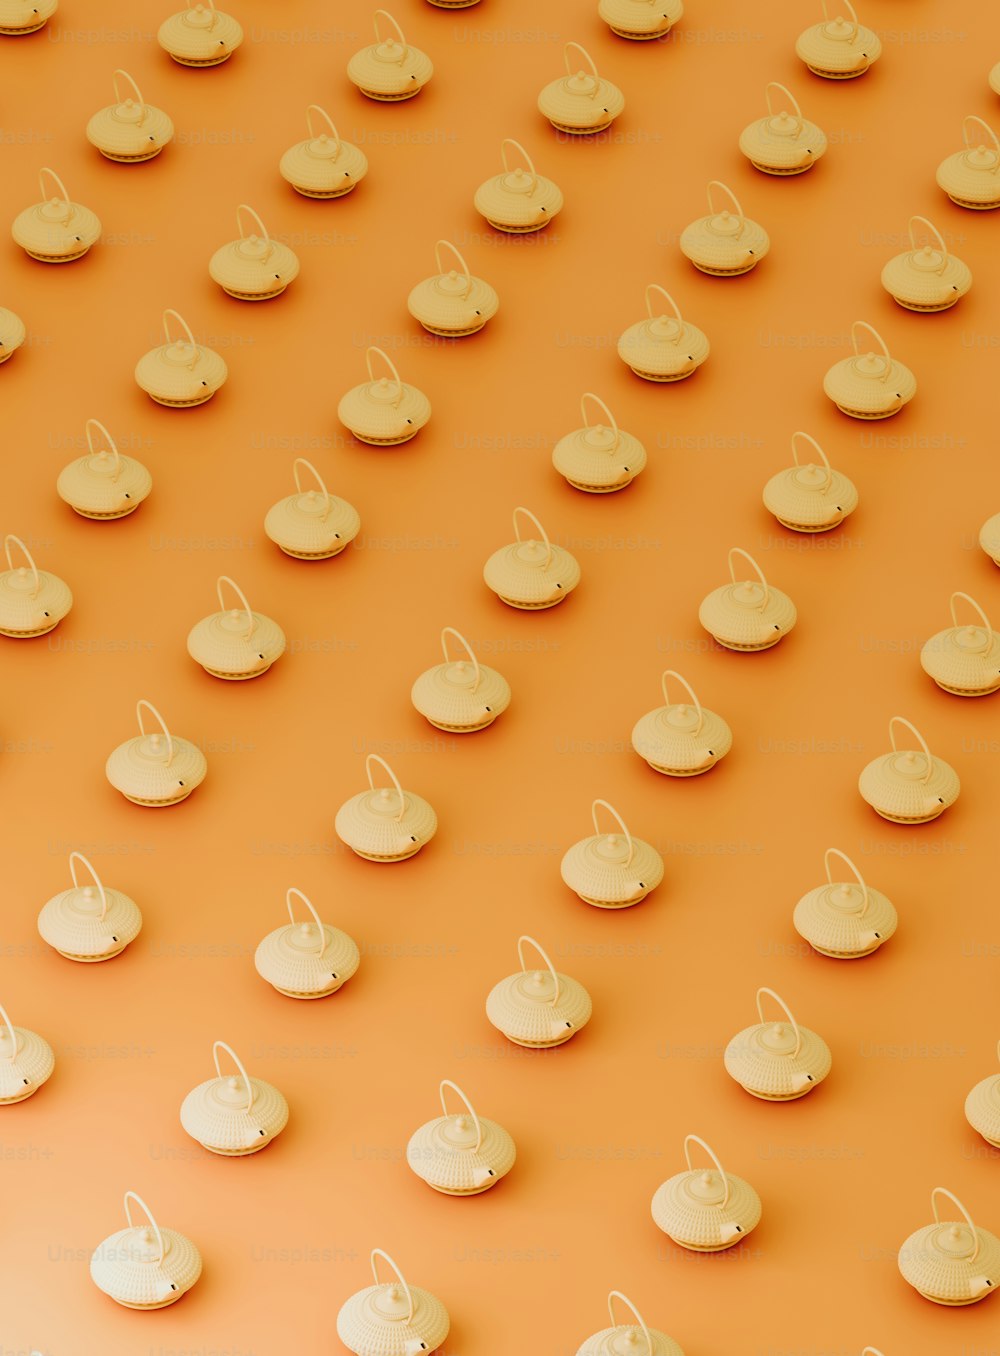 un groupe de petits parapluies blancs assis sur une surface orange